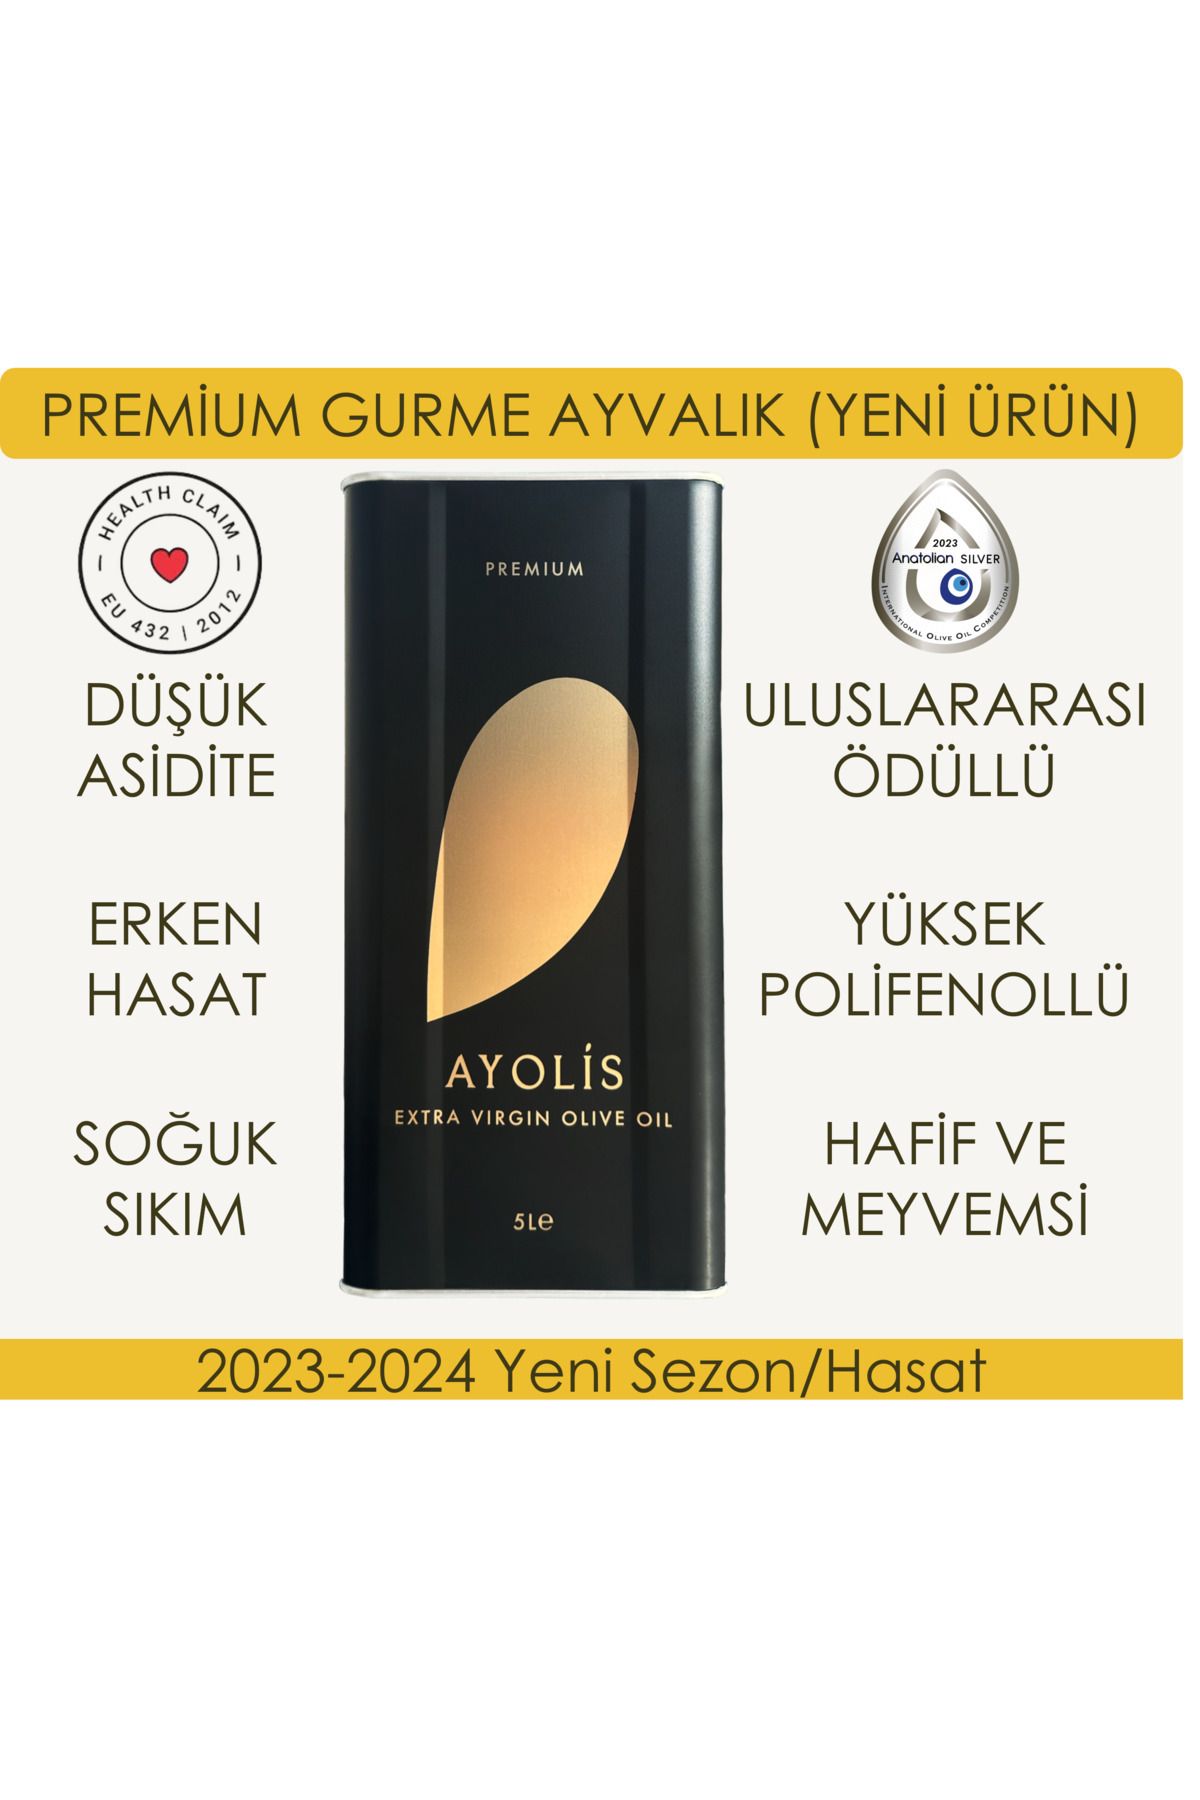 Ayolis Premium Gurme Ayvalık 5 Lt Yüksek Polifenollü Erken Hasat Soğuk Sıkım Natürel Sızma Zeytinyağı